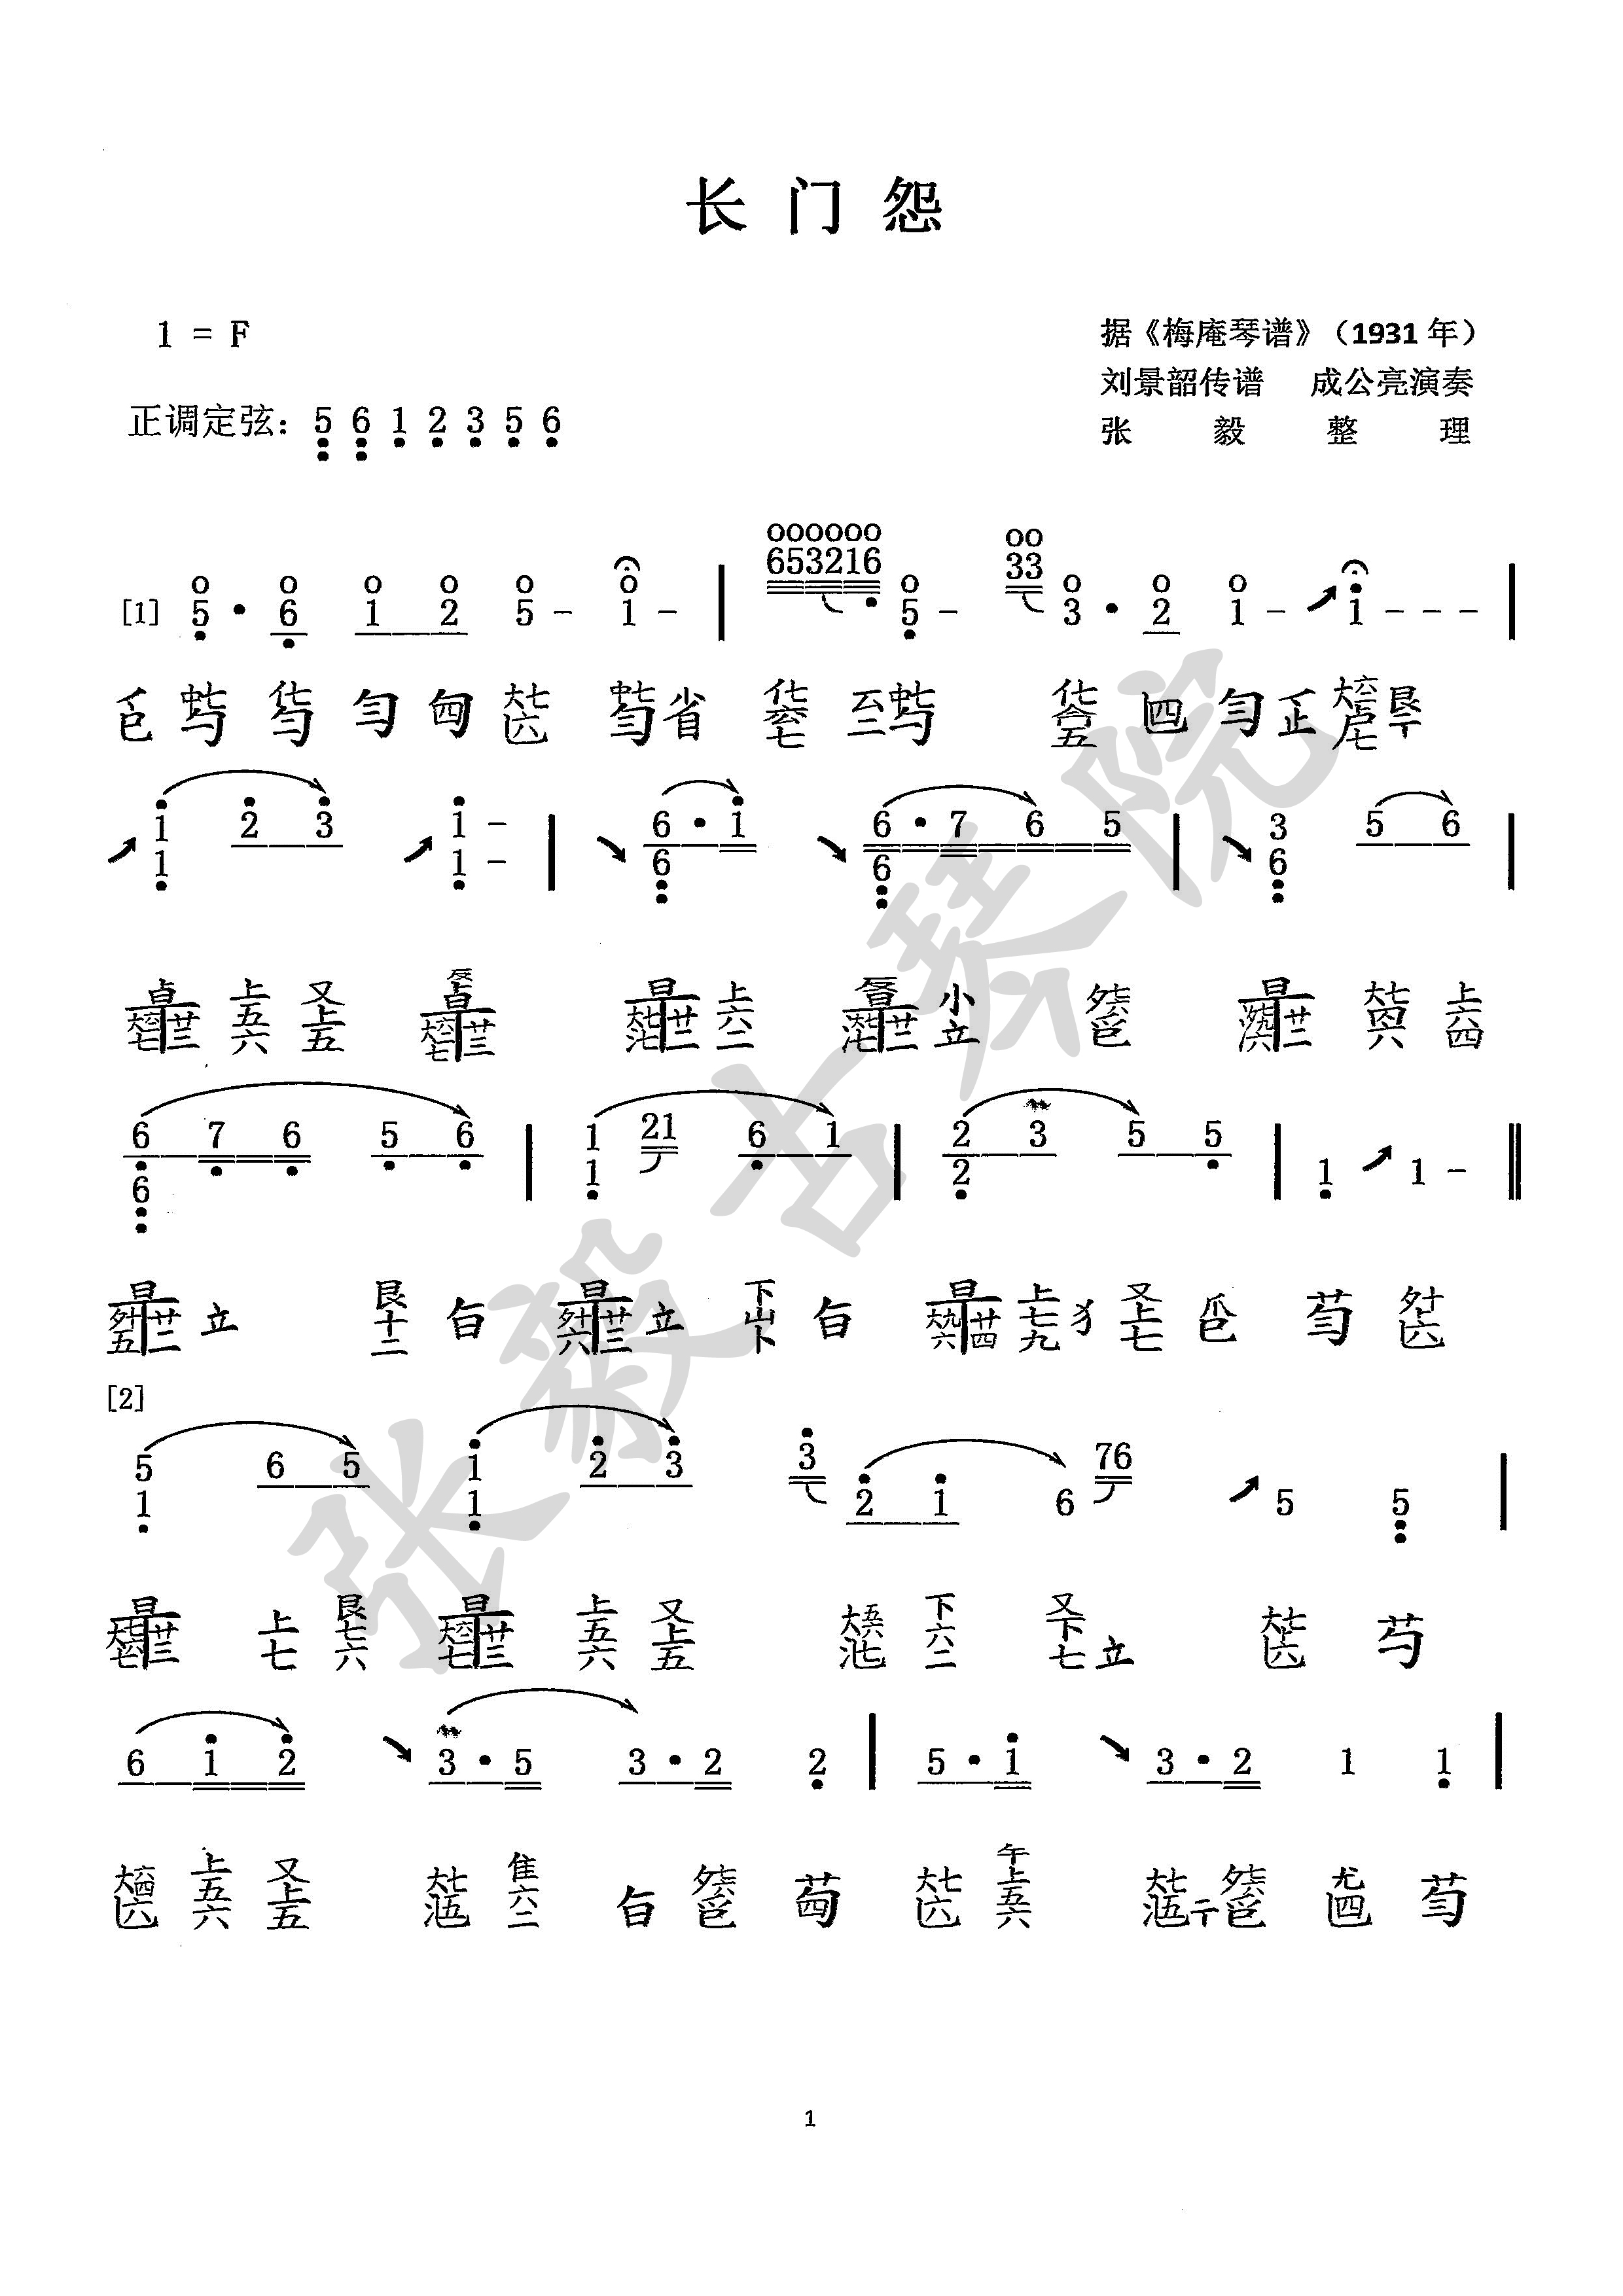 重庆张毅古琴院-名家授课-移植曲谱-中央音乐学院教学体系